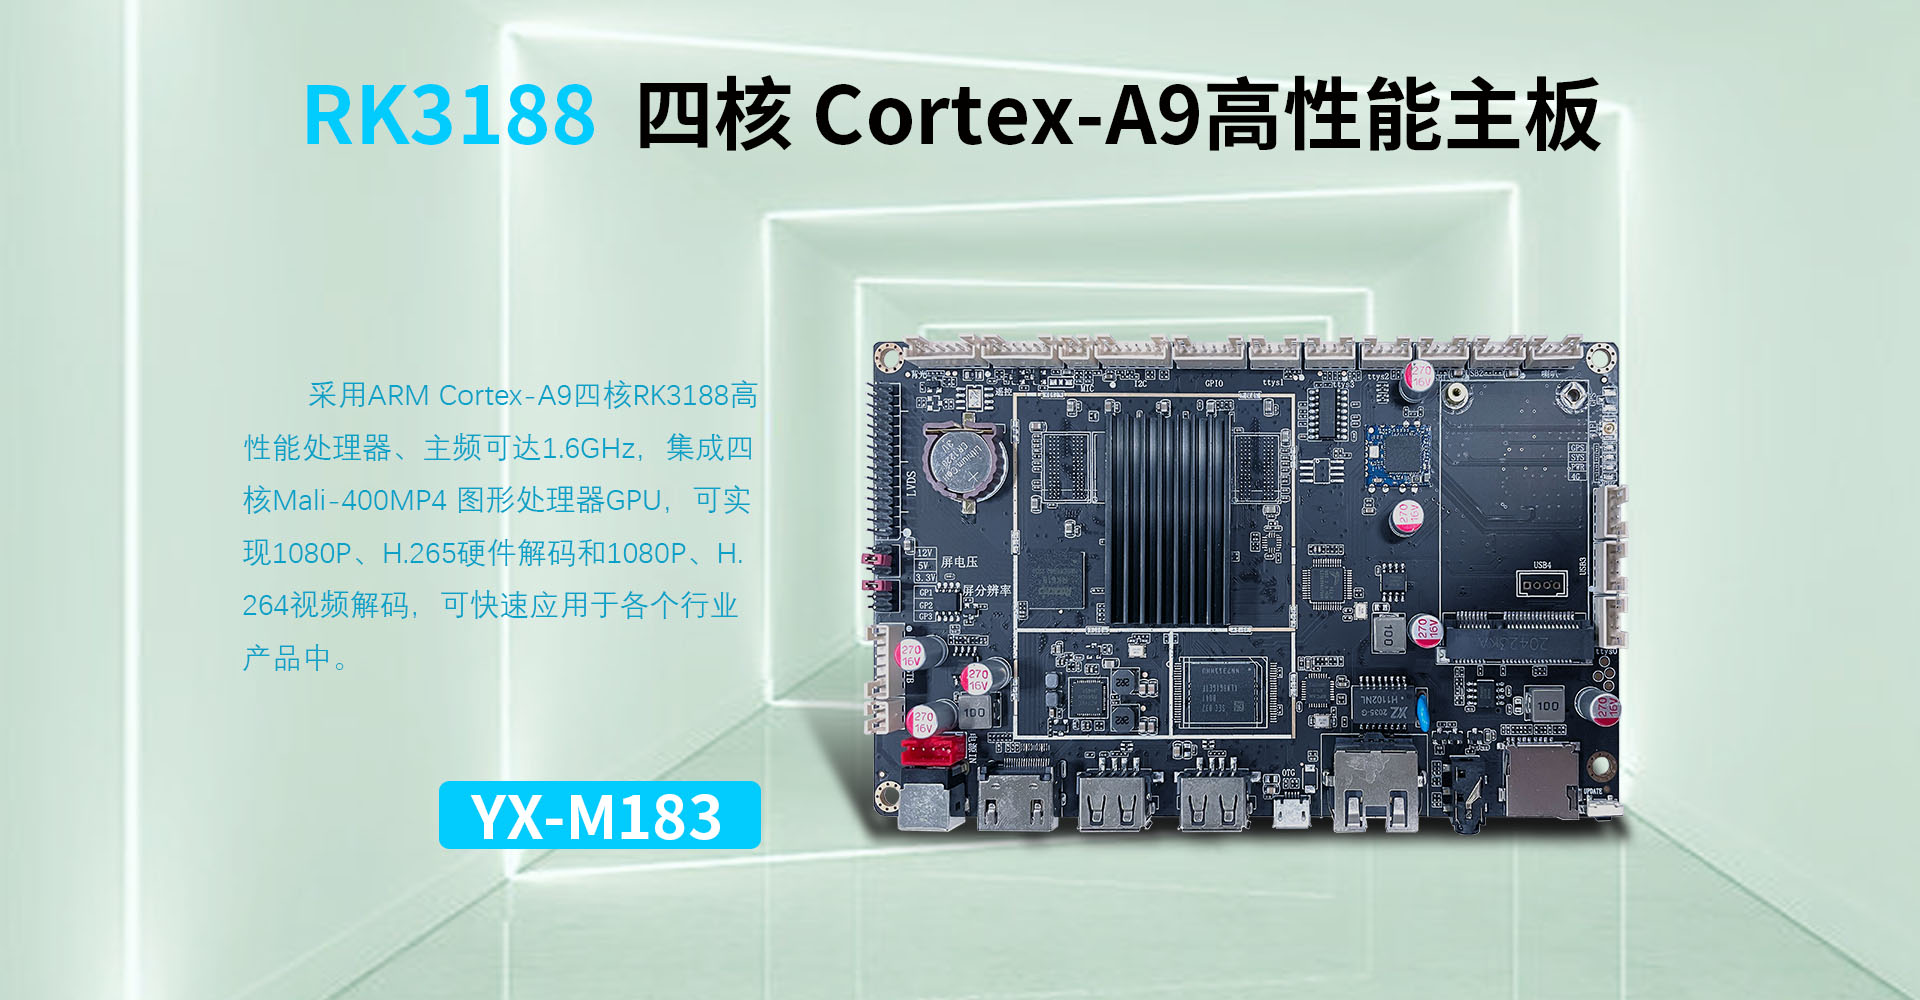 YX-M183 RK3188 智能自助终端主板-深圳市昱显科技有限公司